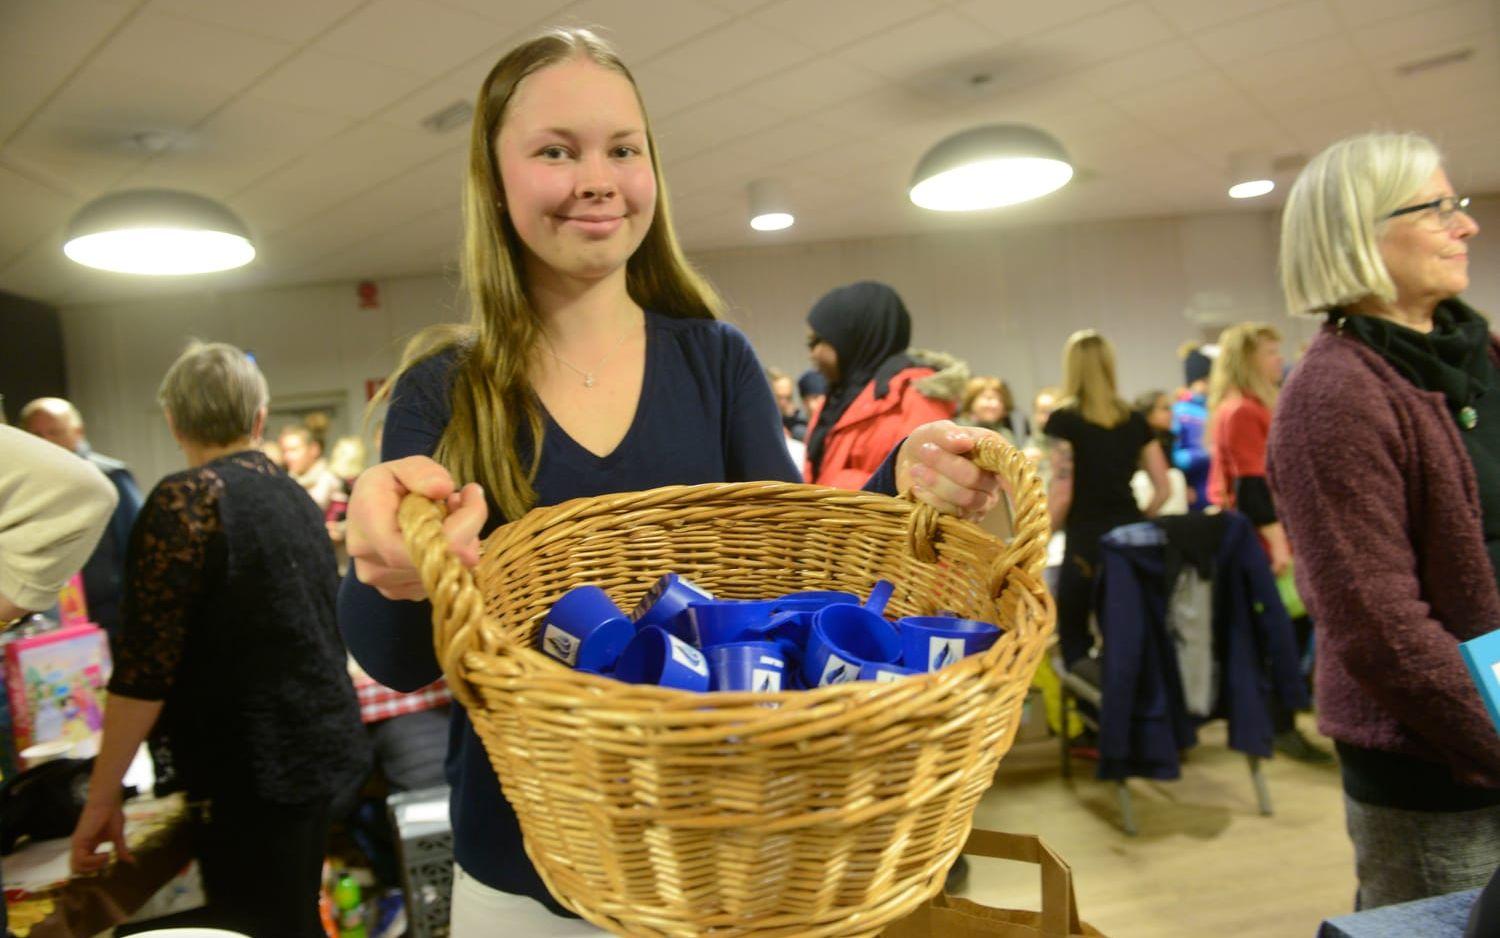 Gymnasieeleven Olivia Svensson, Ung företagsamhet, sålde tvättdosering. Bild: Pasi Hakopuro